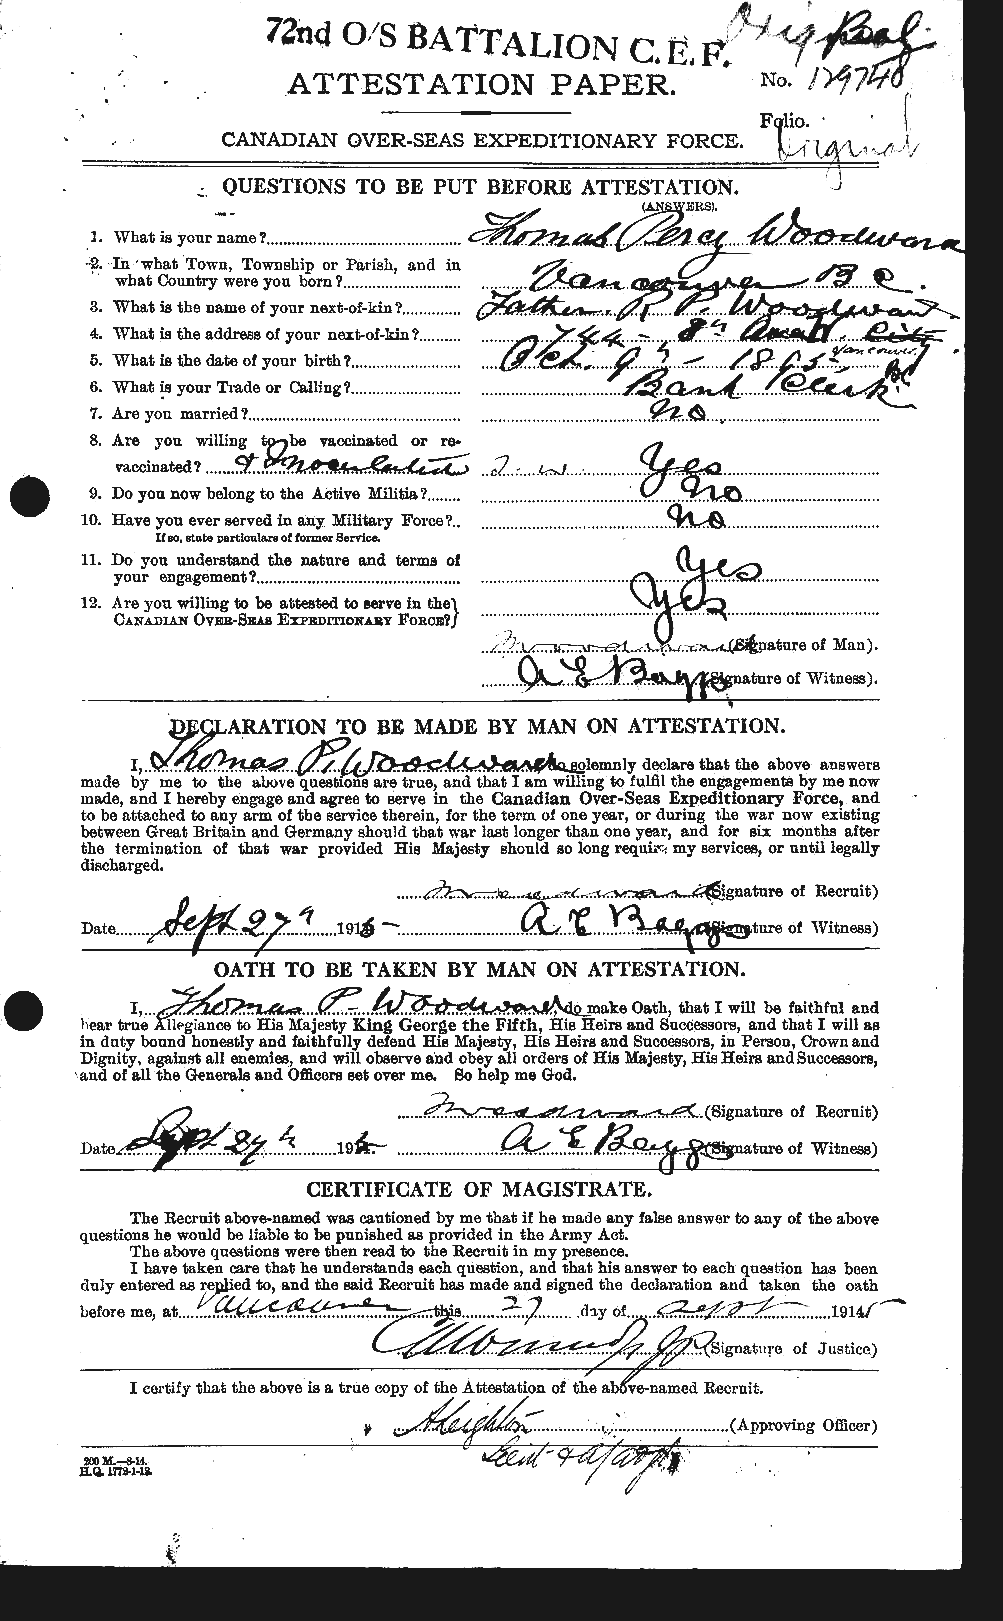 Dossiers du Personnel de la Première Guerre mondiale - CEC 684871a